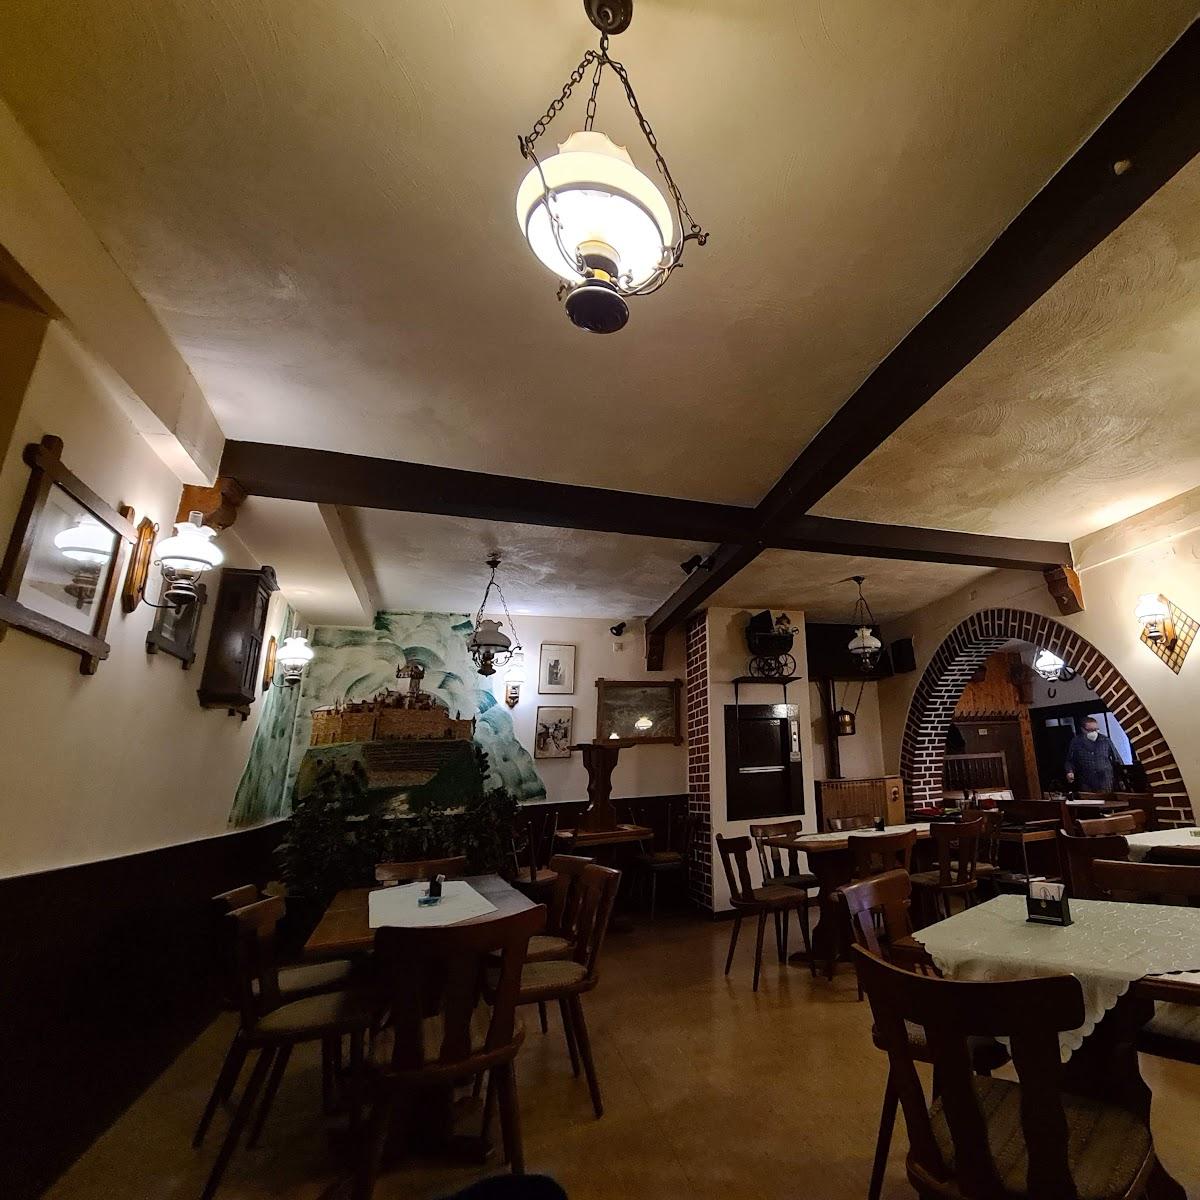 Restaurant "Gaststätte am Balduinstor" in Cochem